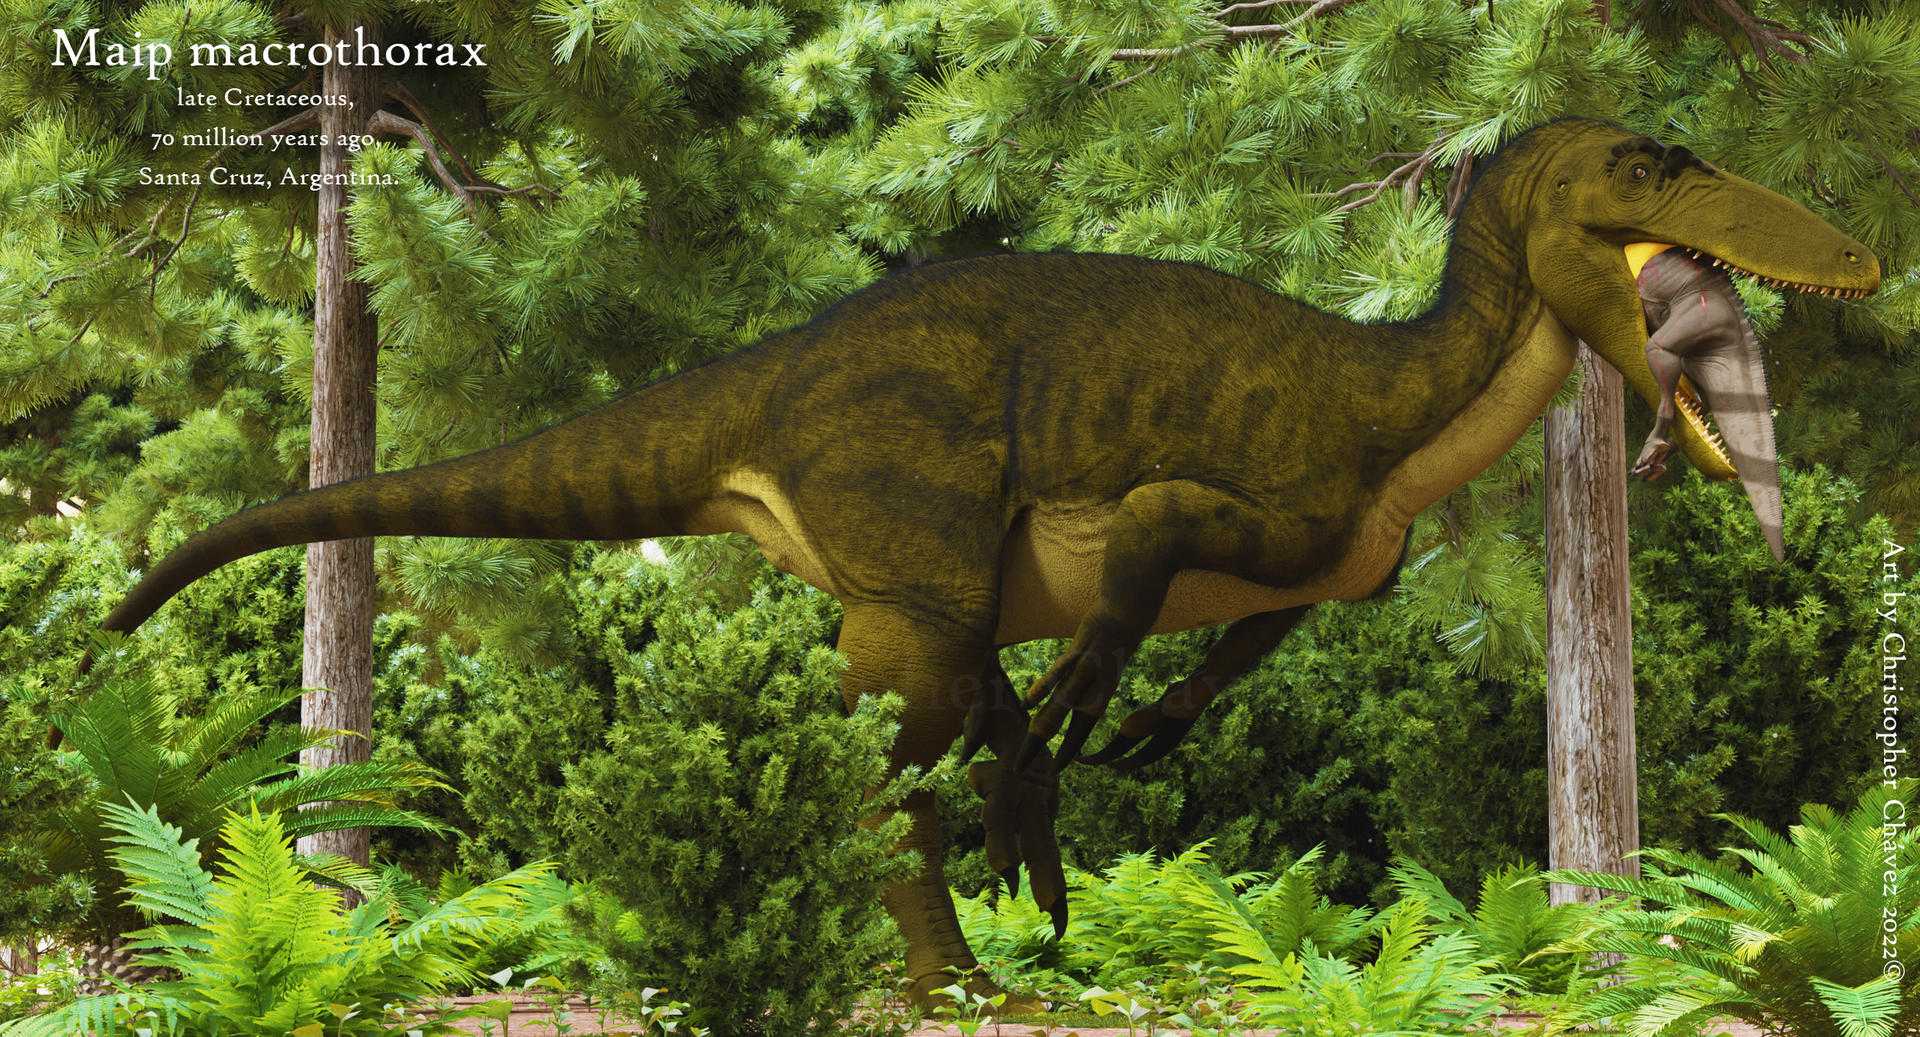 Палеонтологи описали крупнейшего мегараптора длиной около 10 метров